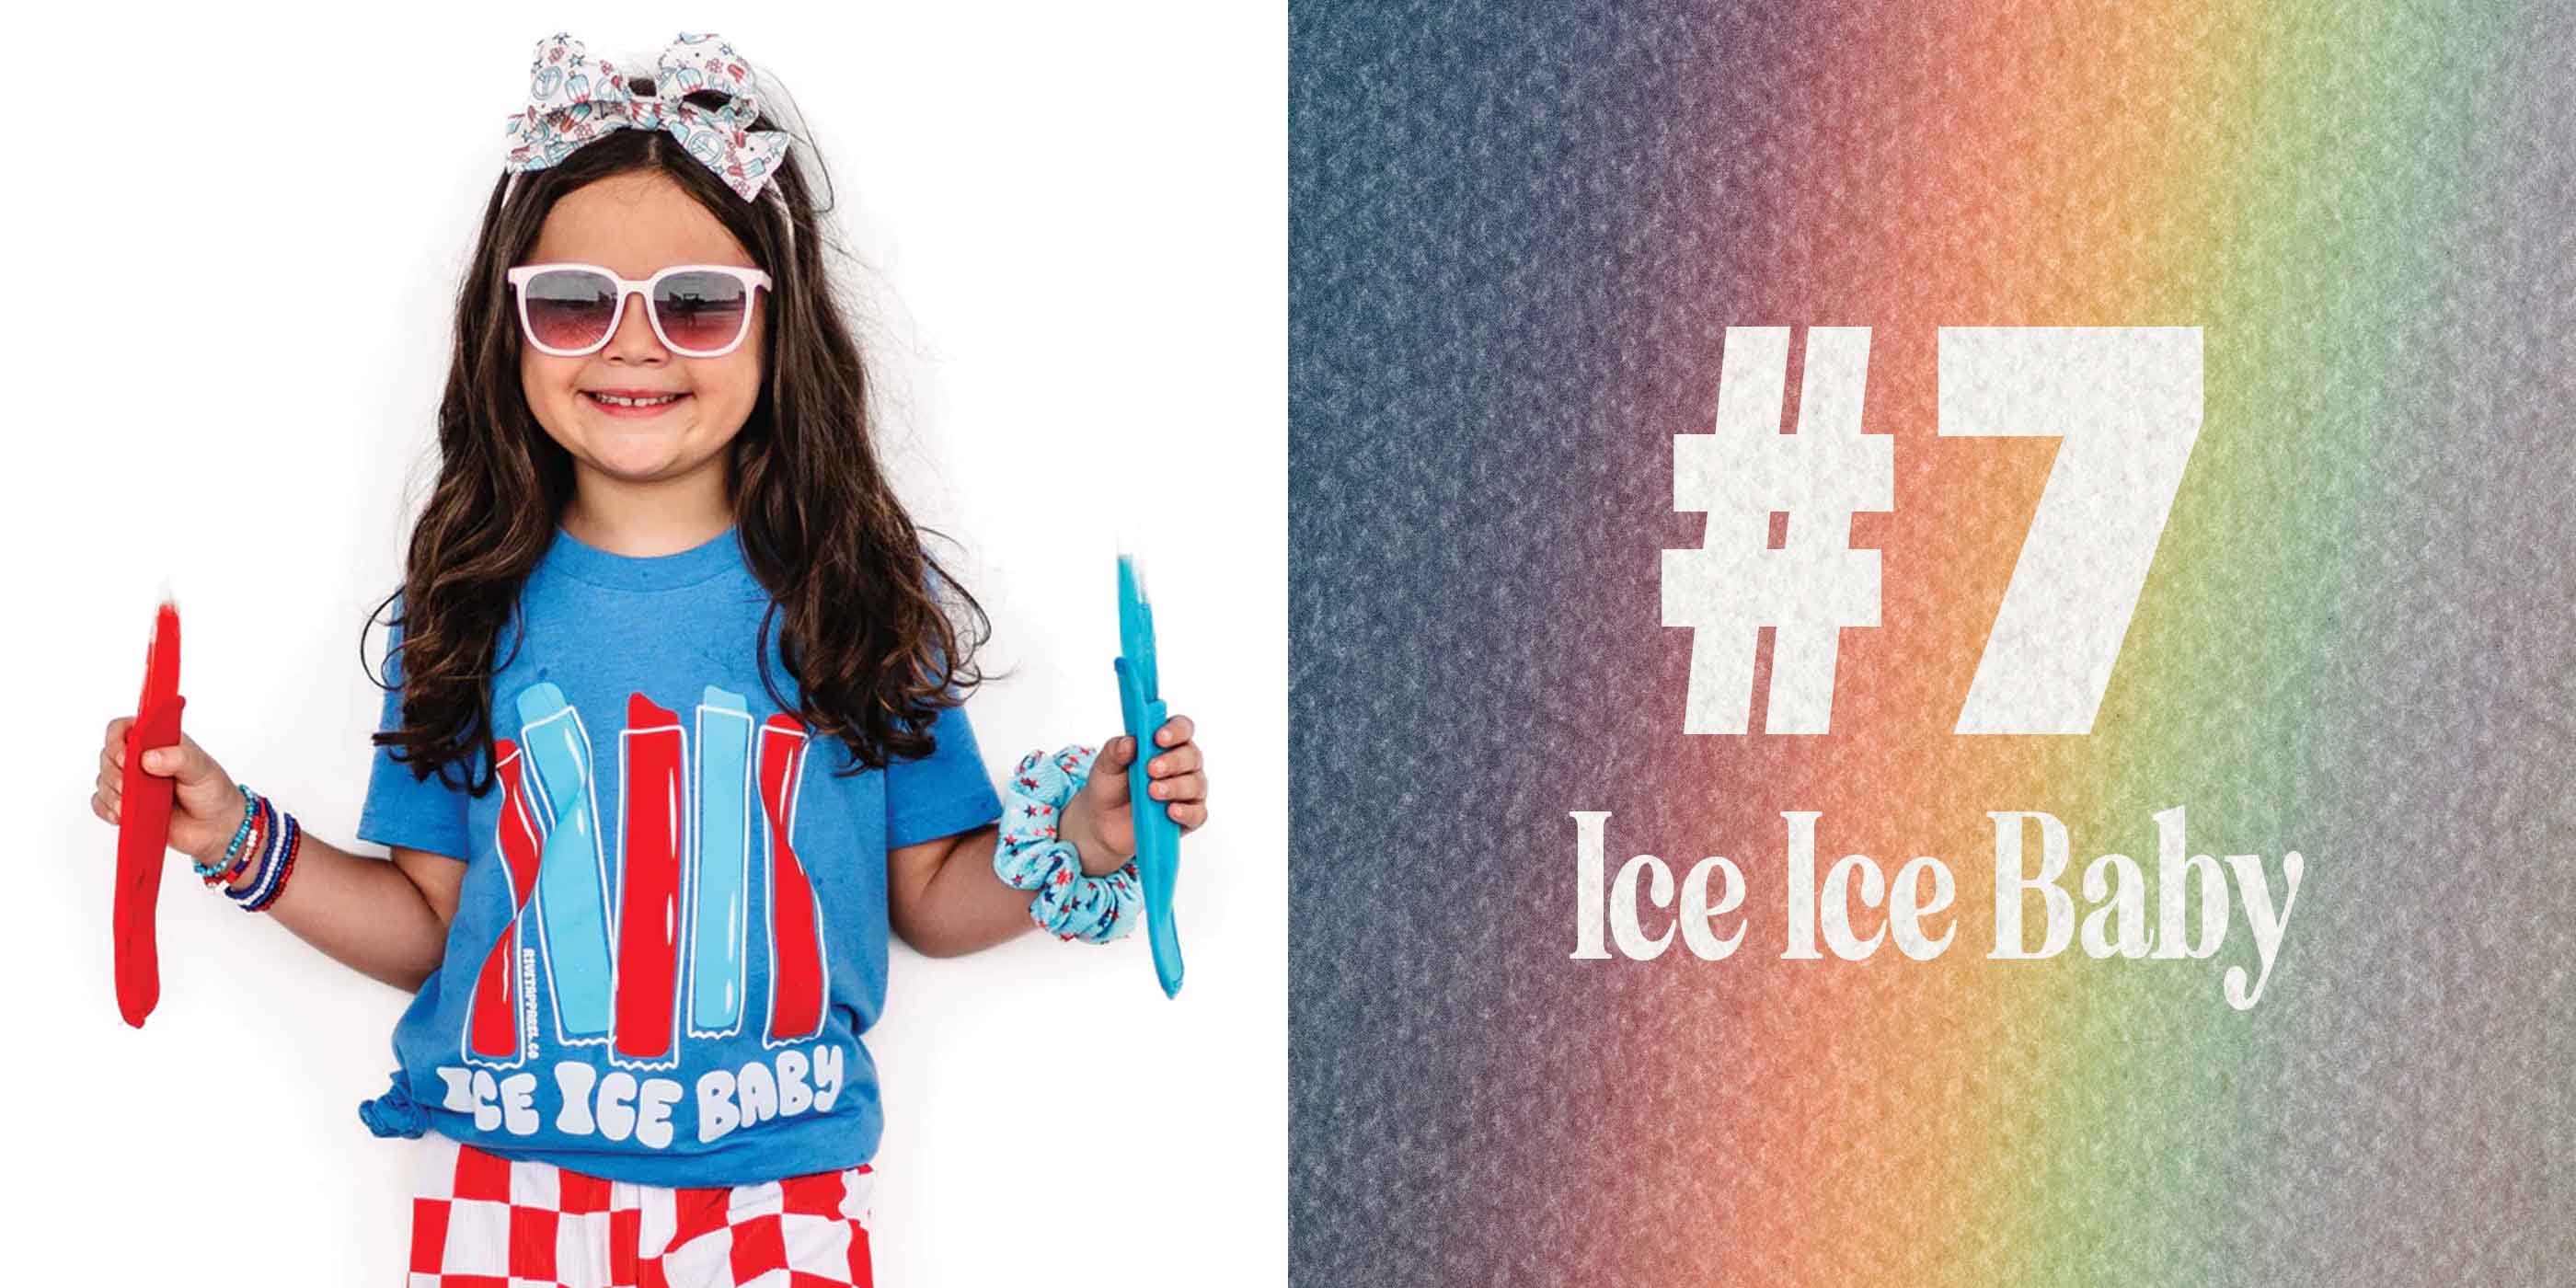 7 - Ice Ice Baby